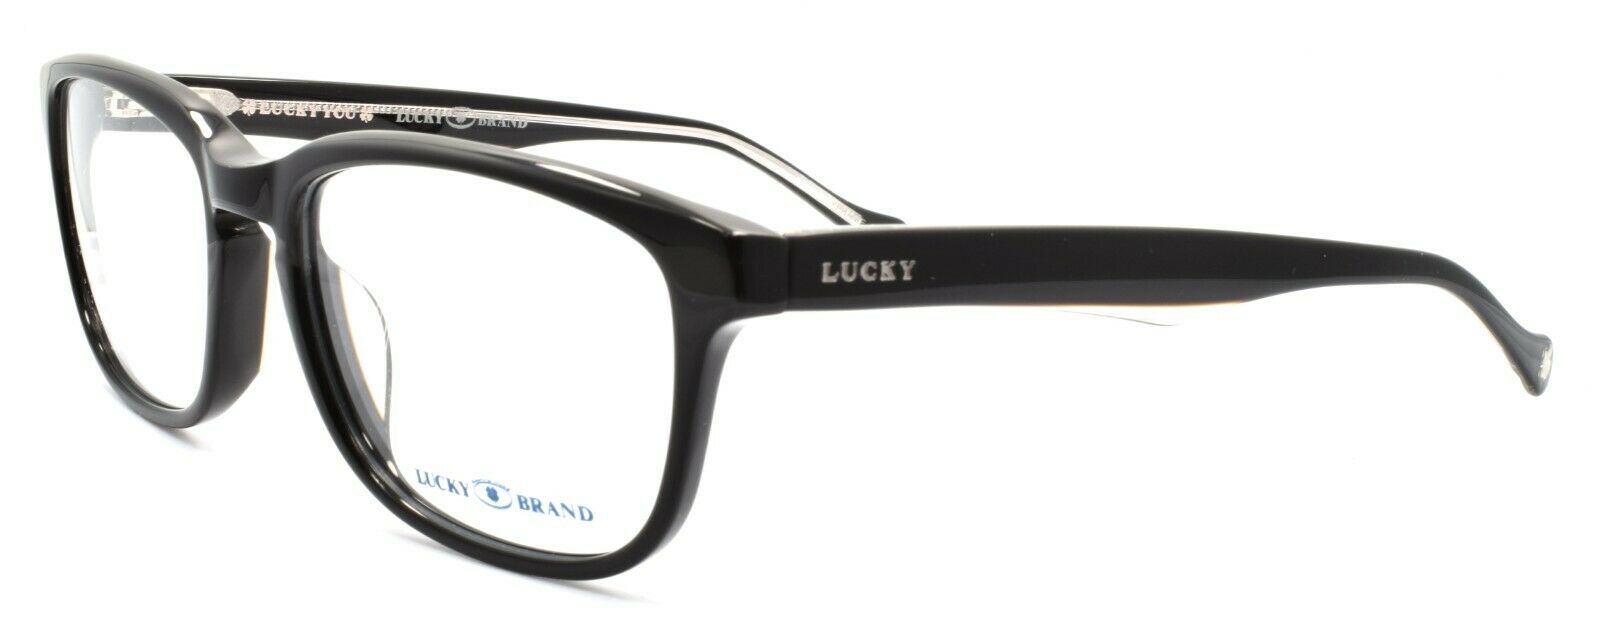 1-LUCKY BRAND Folklore Men's Eyeglasses Frames 52-17-140 Black + CASE-751286223873-IKSpecs